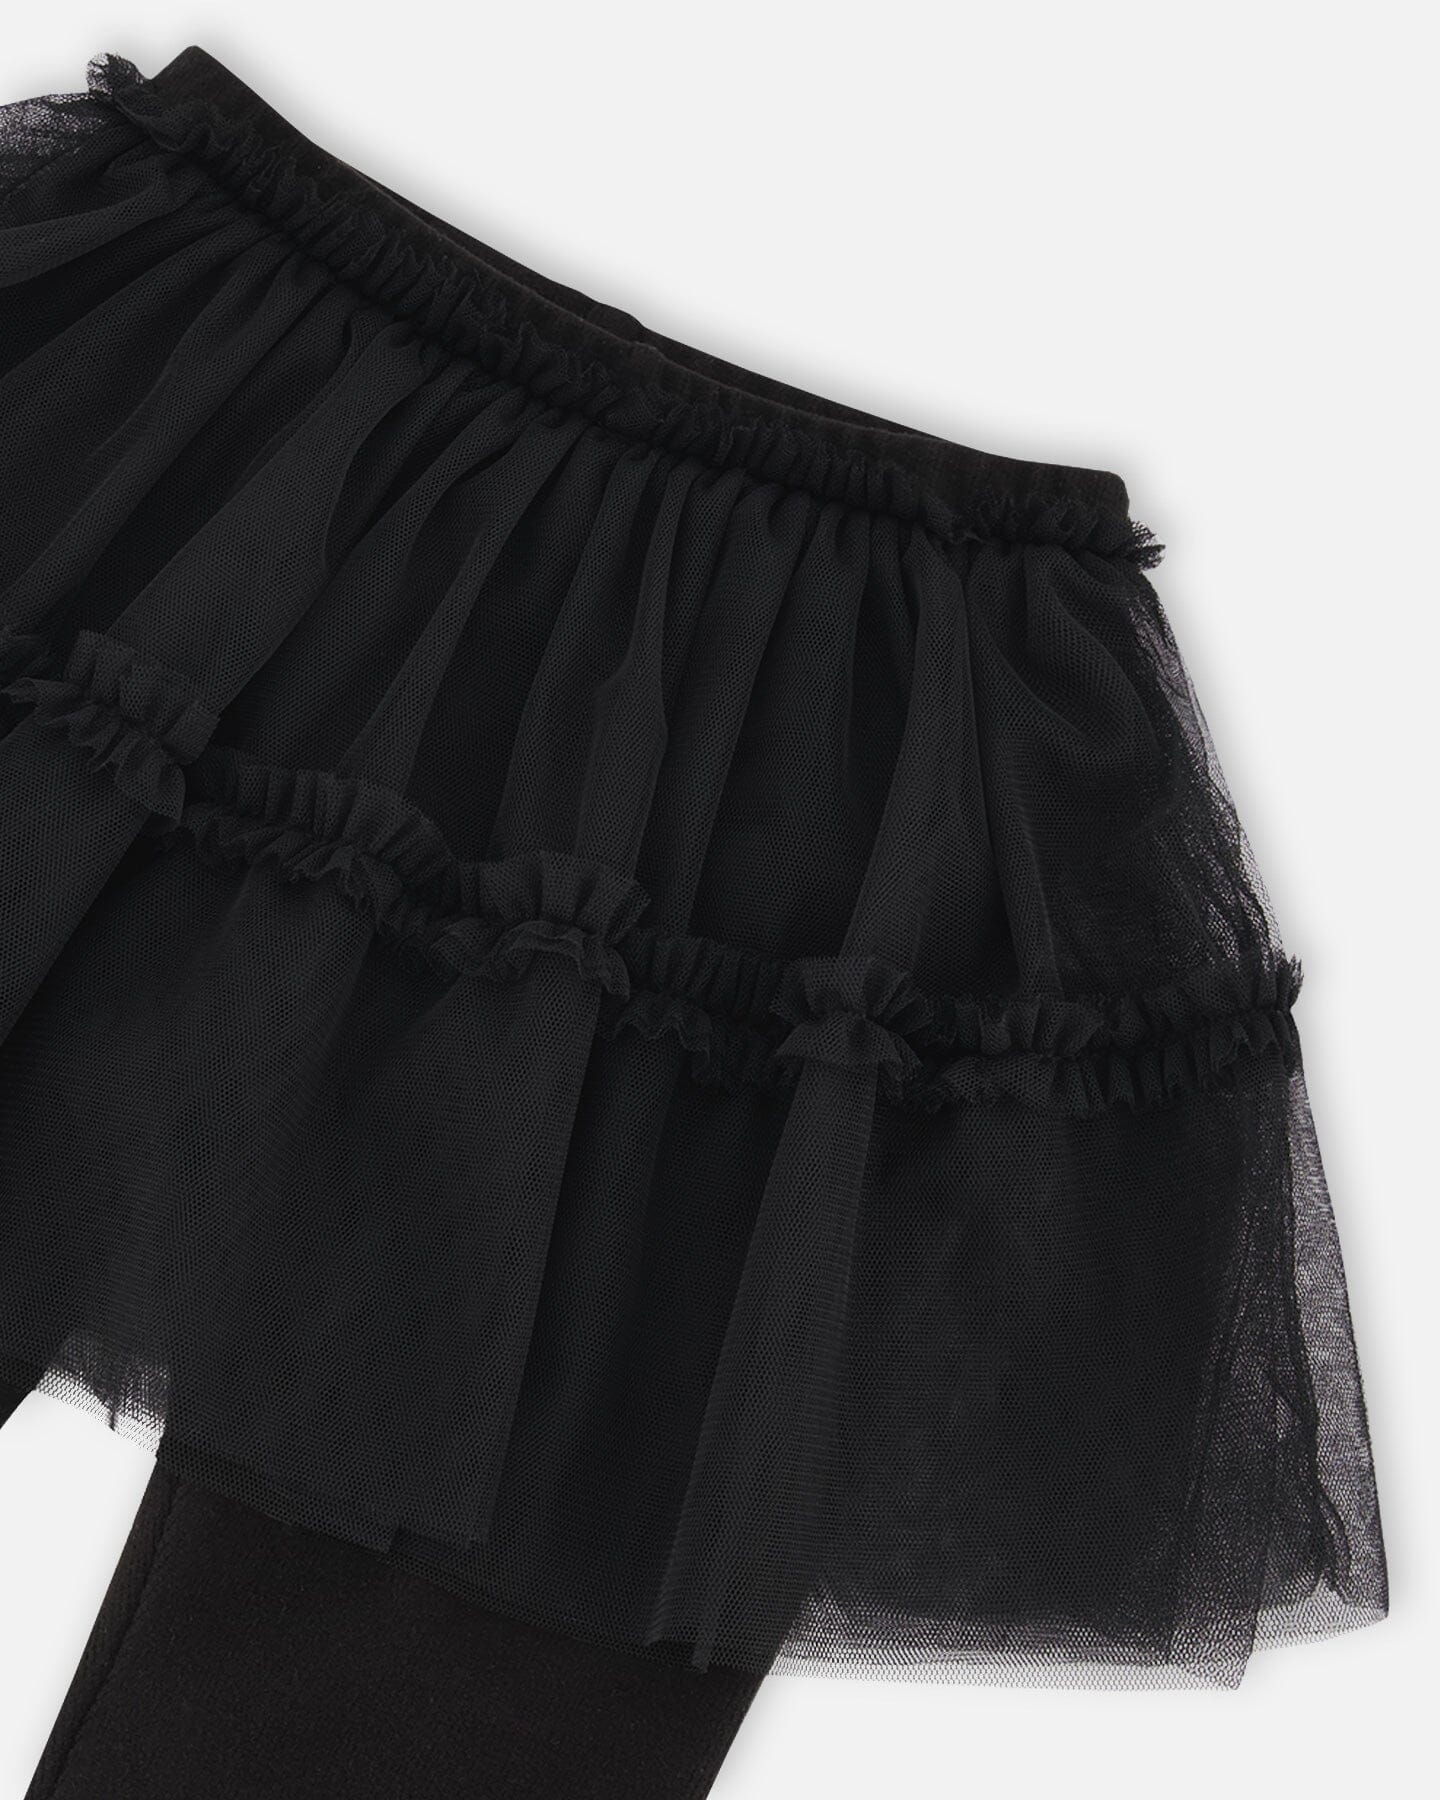 Black Leggings with Tulle Skirt